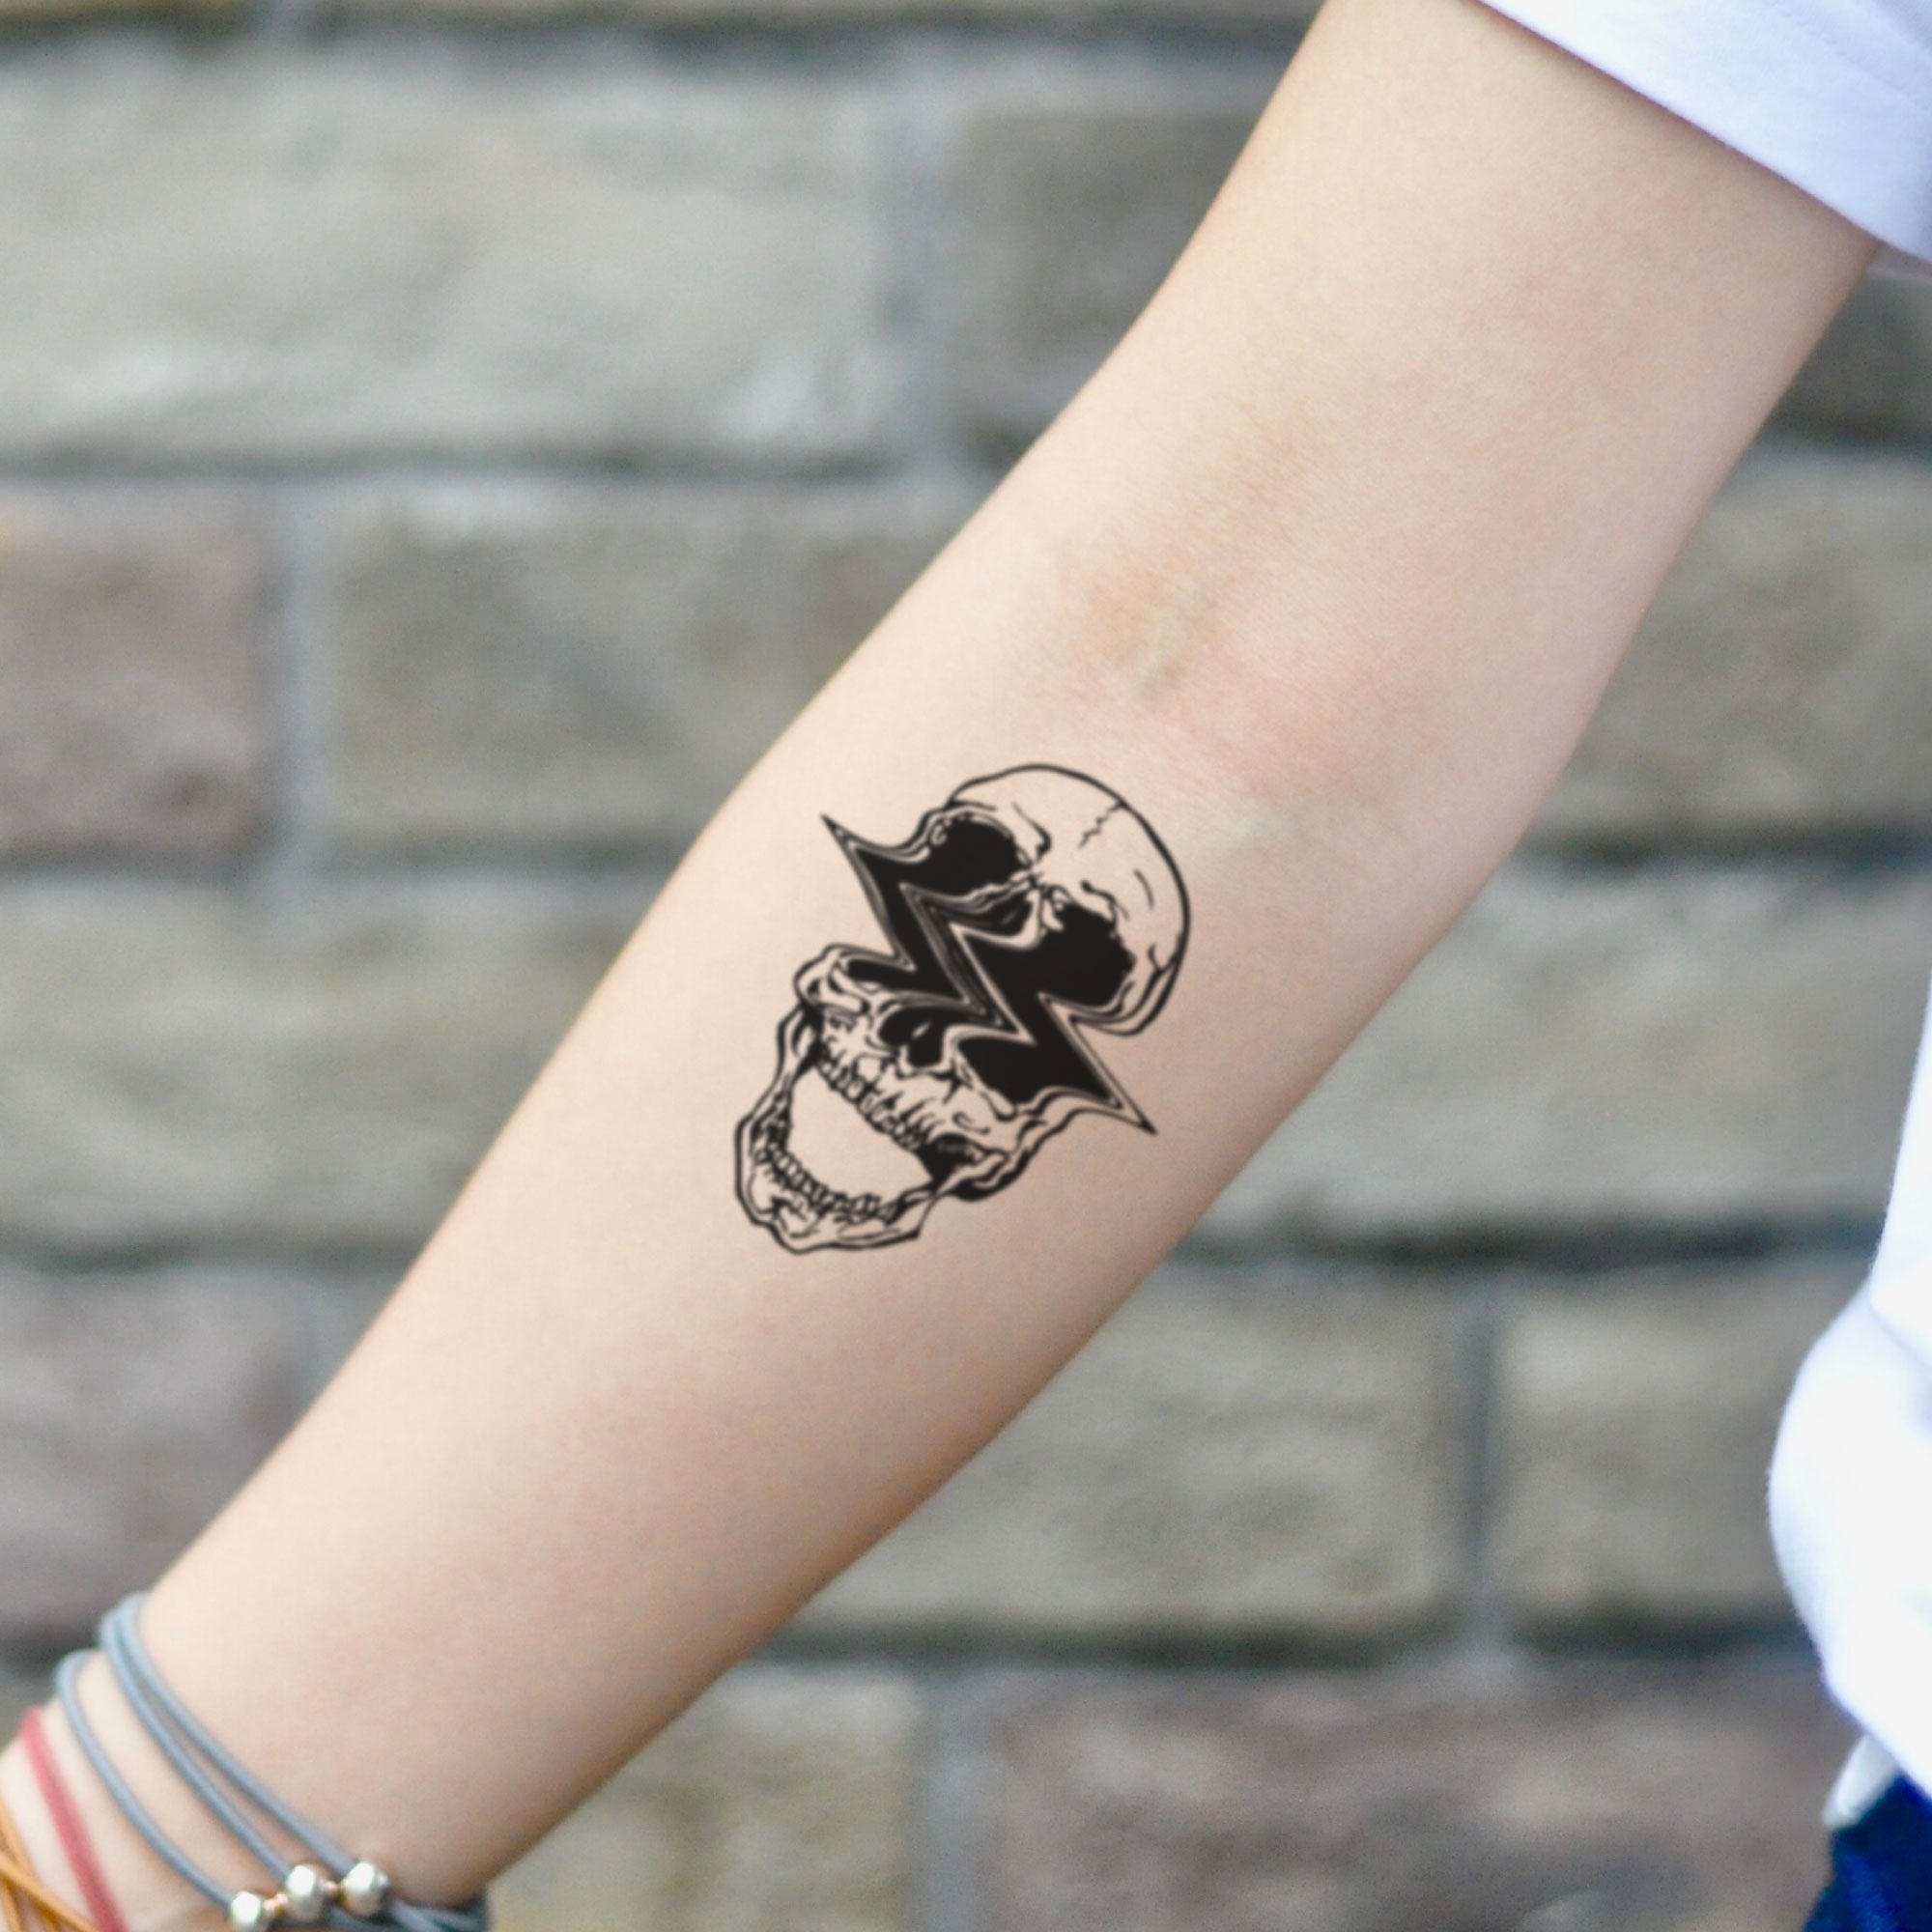 Minimalistic tattoo design | tattoo ideas | tattoo inspiration | tattoo  aesthetic | small tattoo | Small tattoos, Tattoos, Discreet tattoos